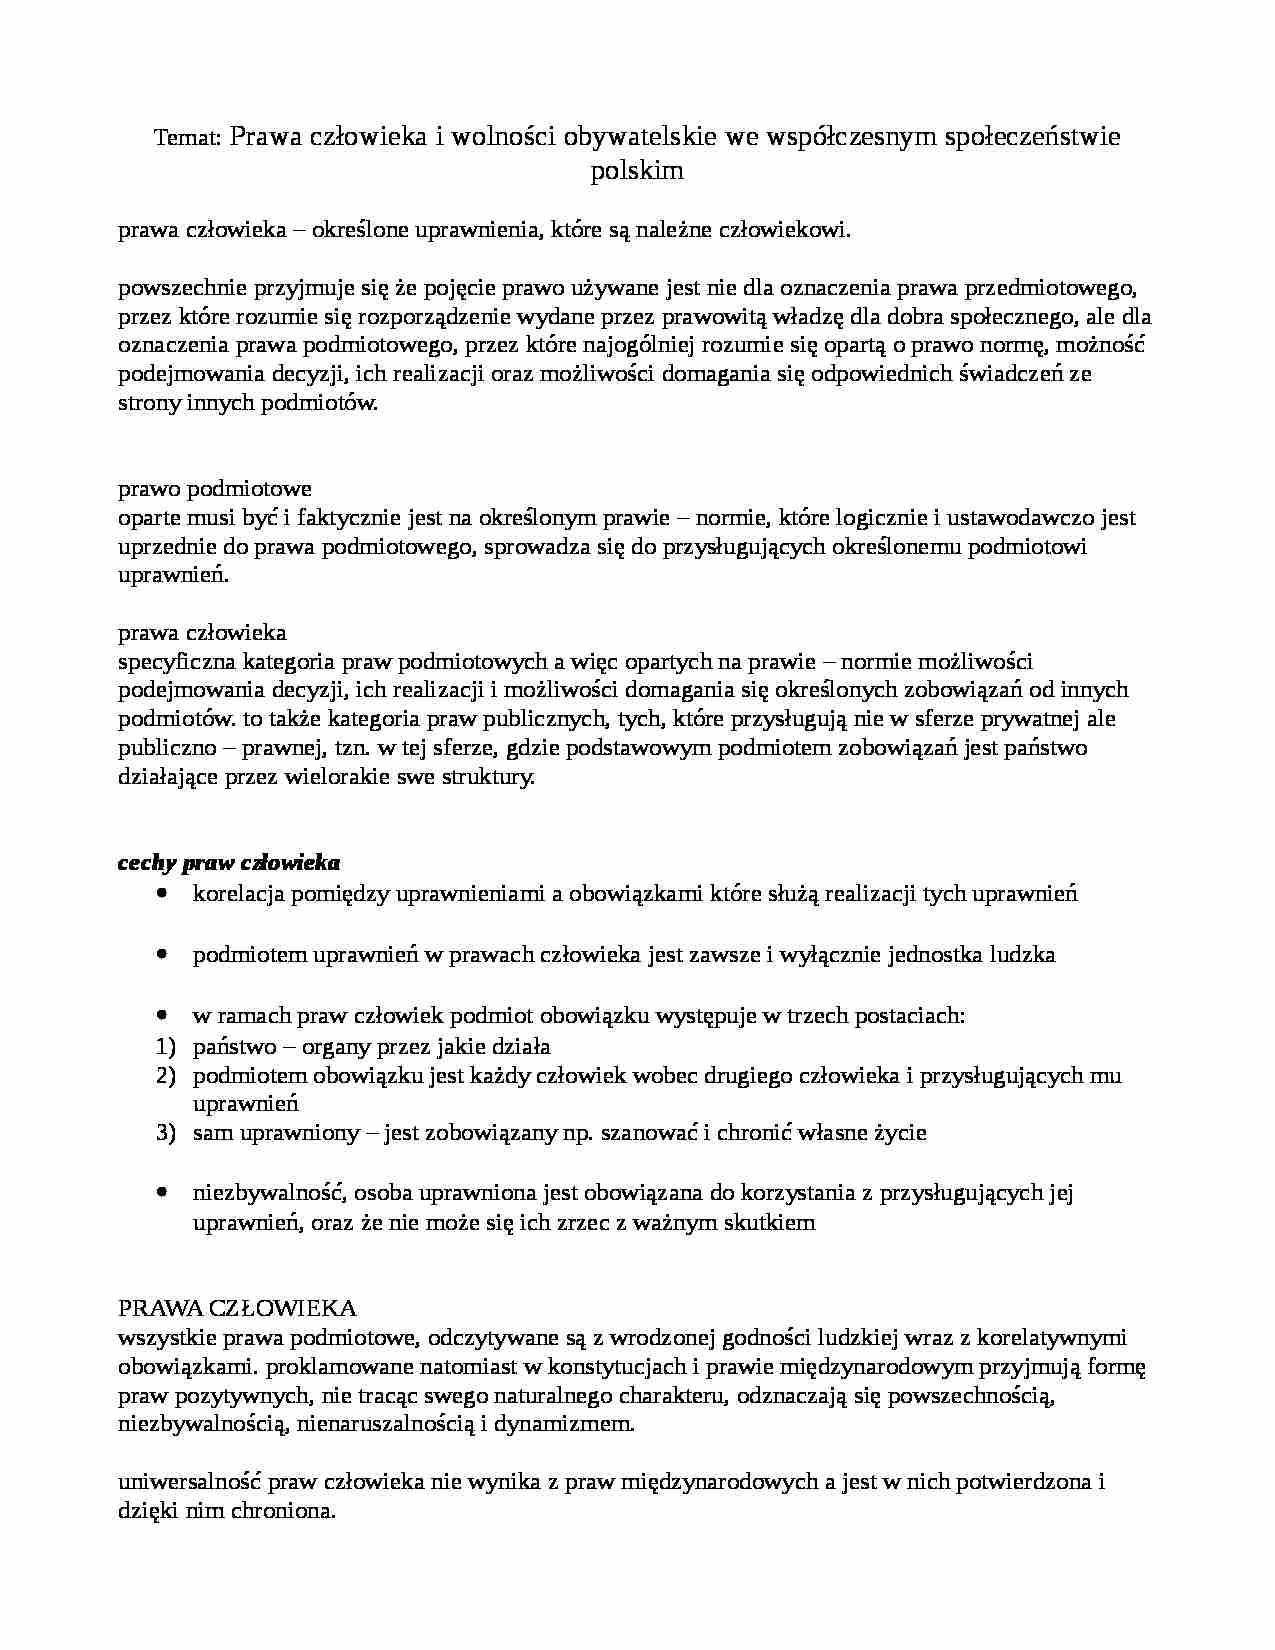 Dynamika zmiany współczesnego społeczeństwa polskiego - wykład 2 - strona 1